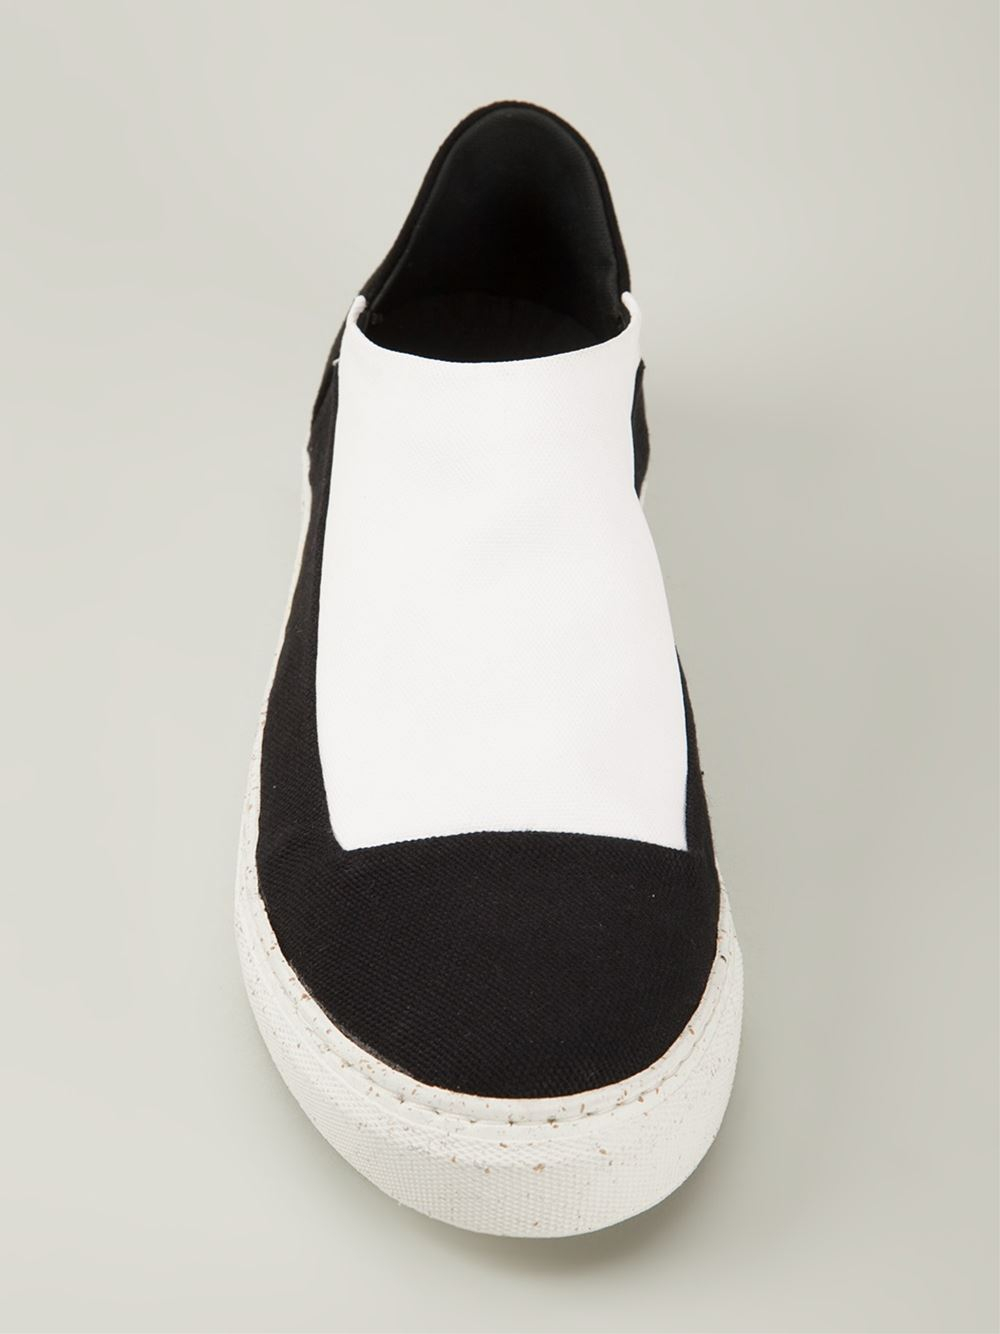 Rombaut Colour Block Slip-On Sneakers in Black for Men - Lyst